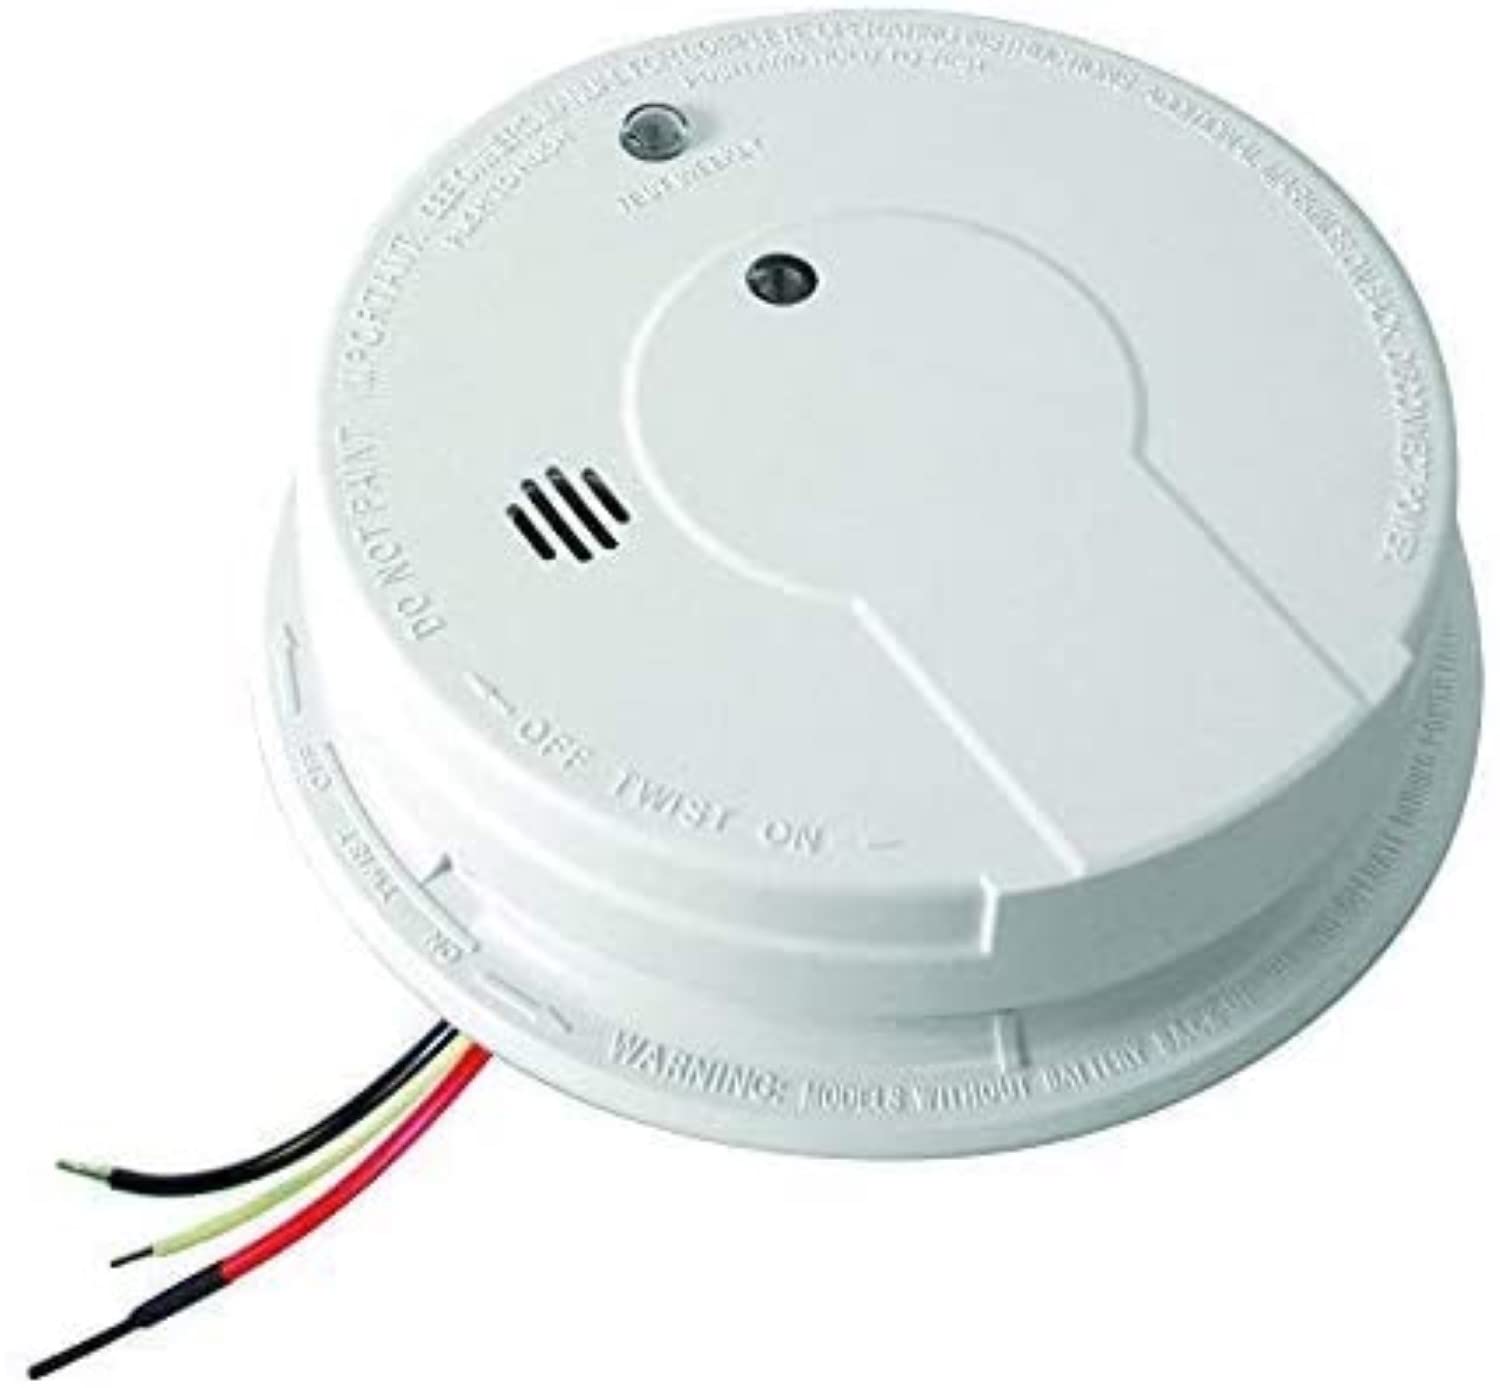 Kidde Smoke Detector, Hardwired Smoke Alarm with Battery Backup & Interconnect